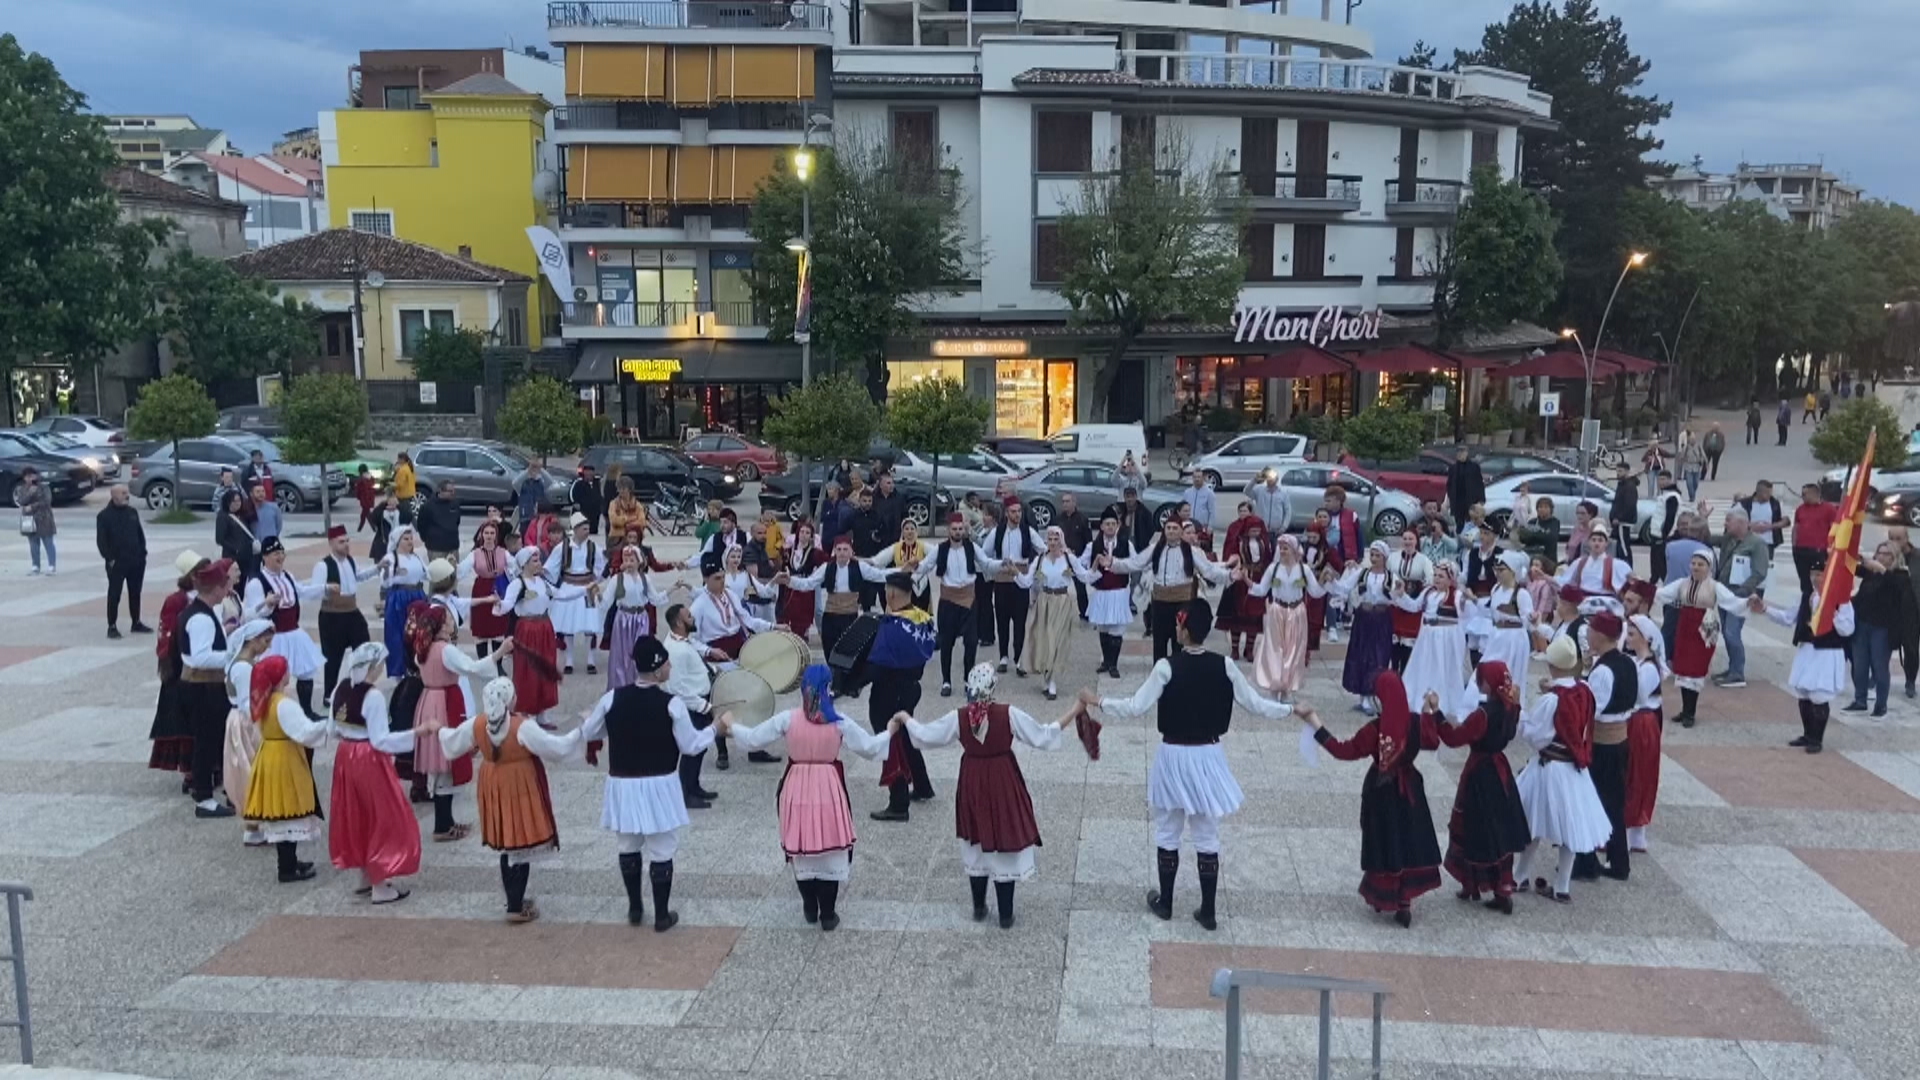  ‘Art, zeje dhe sport’/ Panair në Gjirokastër, prezantohen punime tradicionale